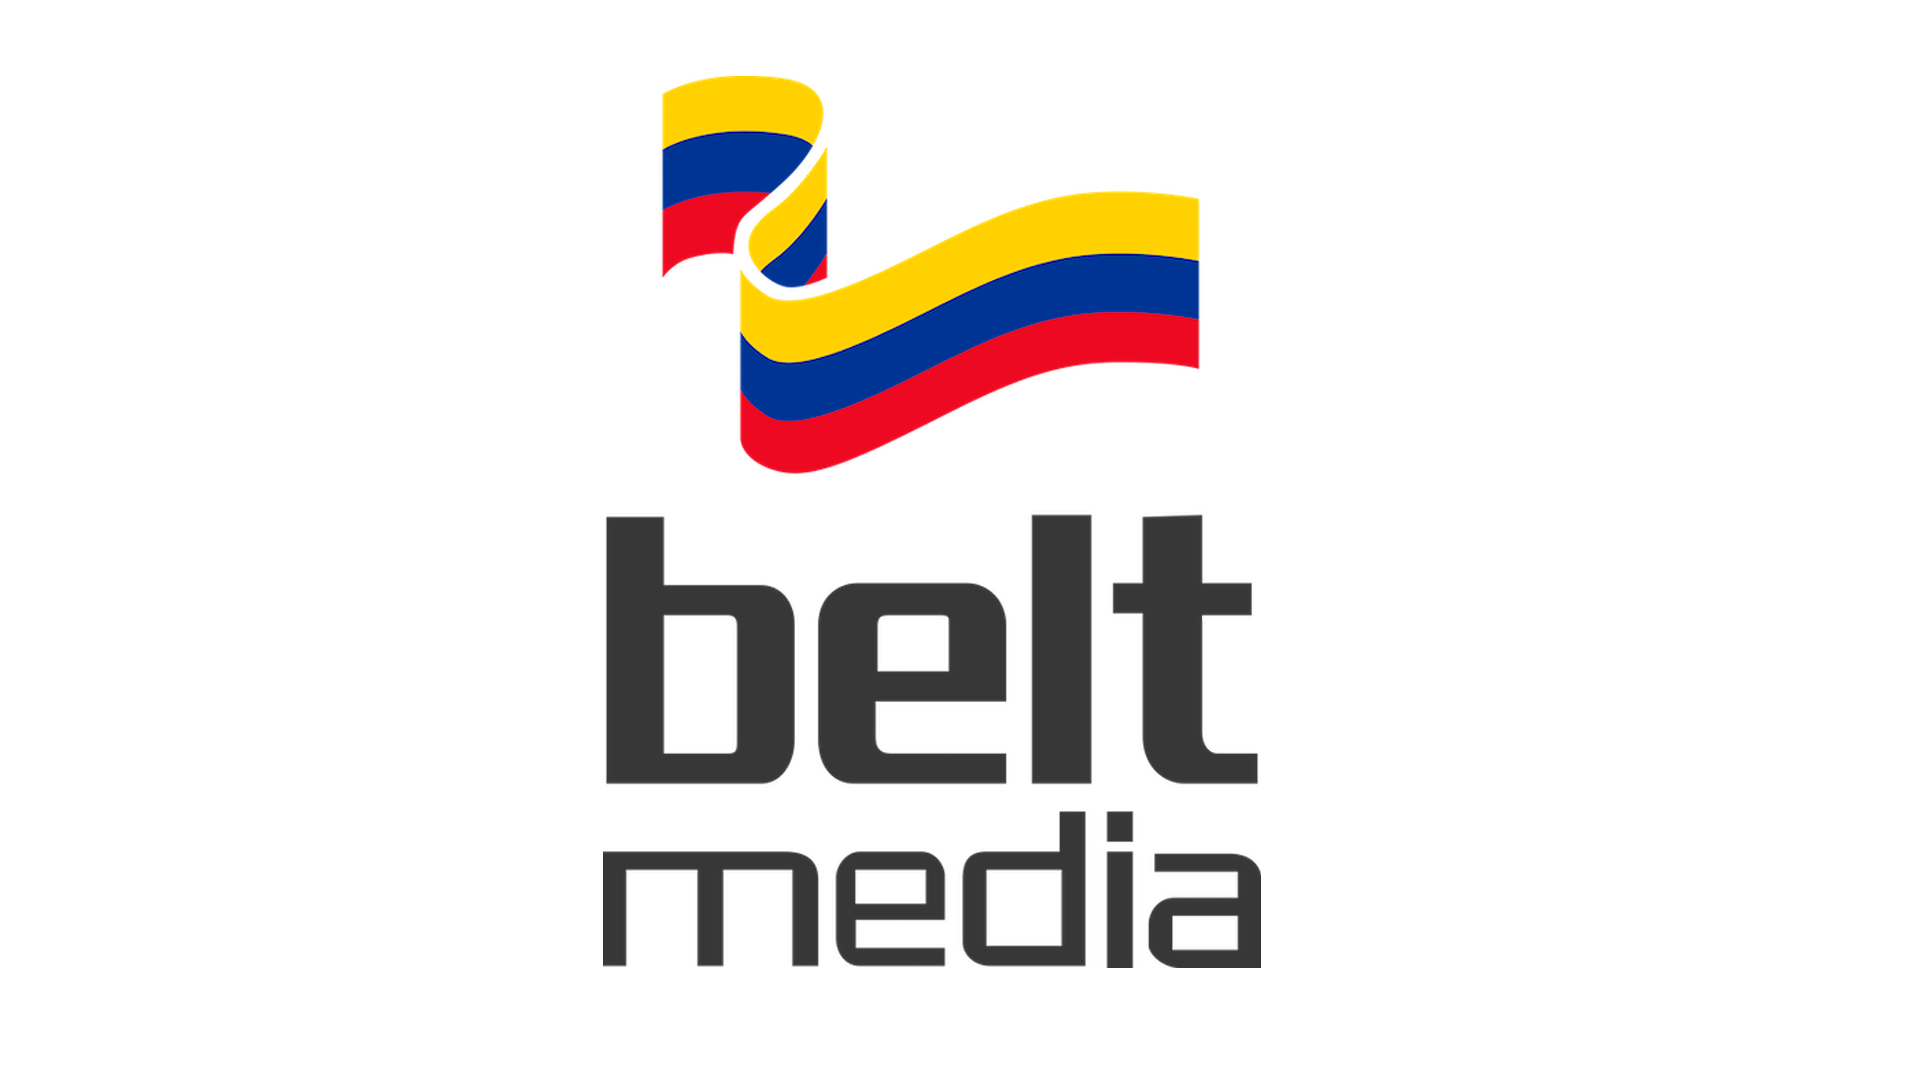 BeltMedia